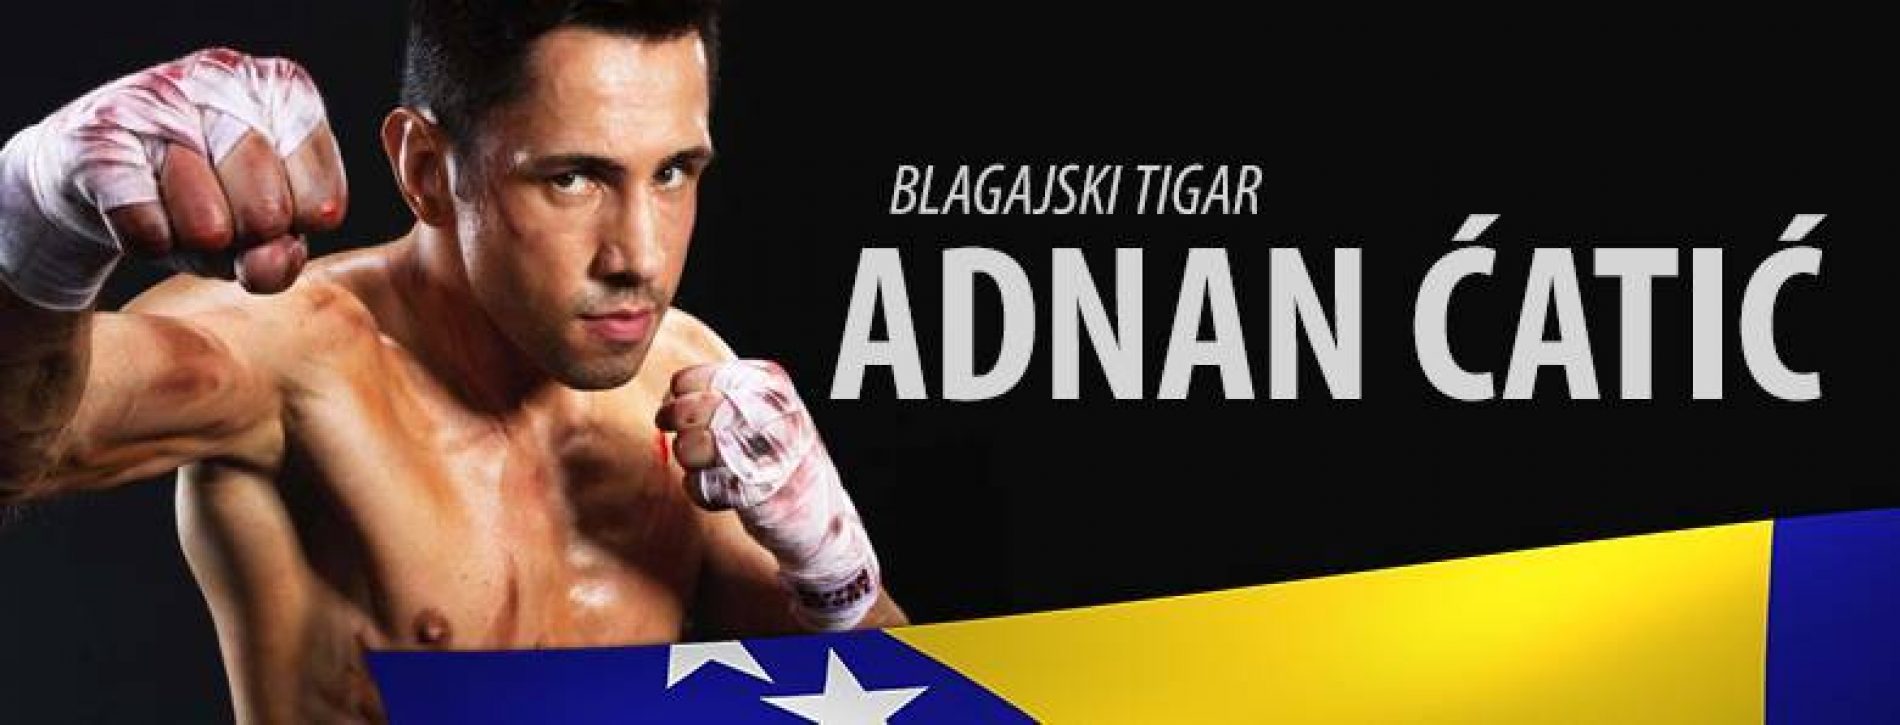 Nakon iscenirane doping afere, Adnan Ćatić se vraća u ring